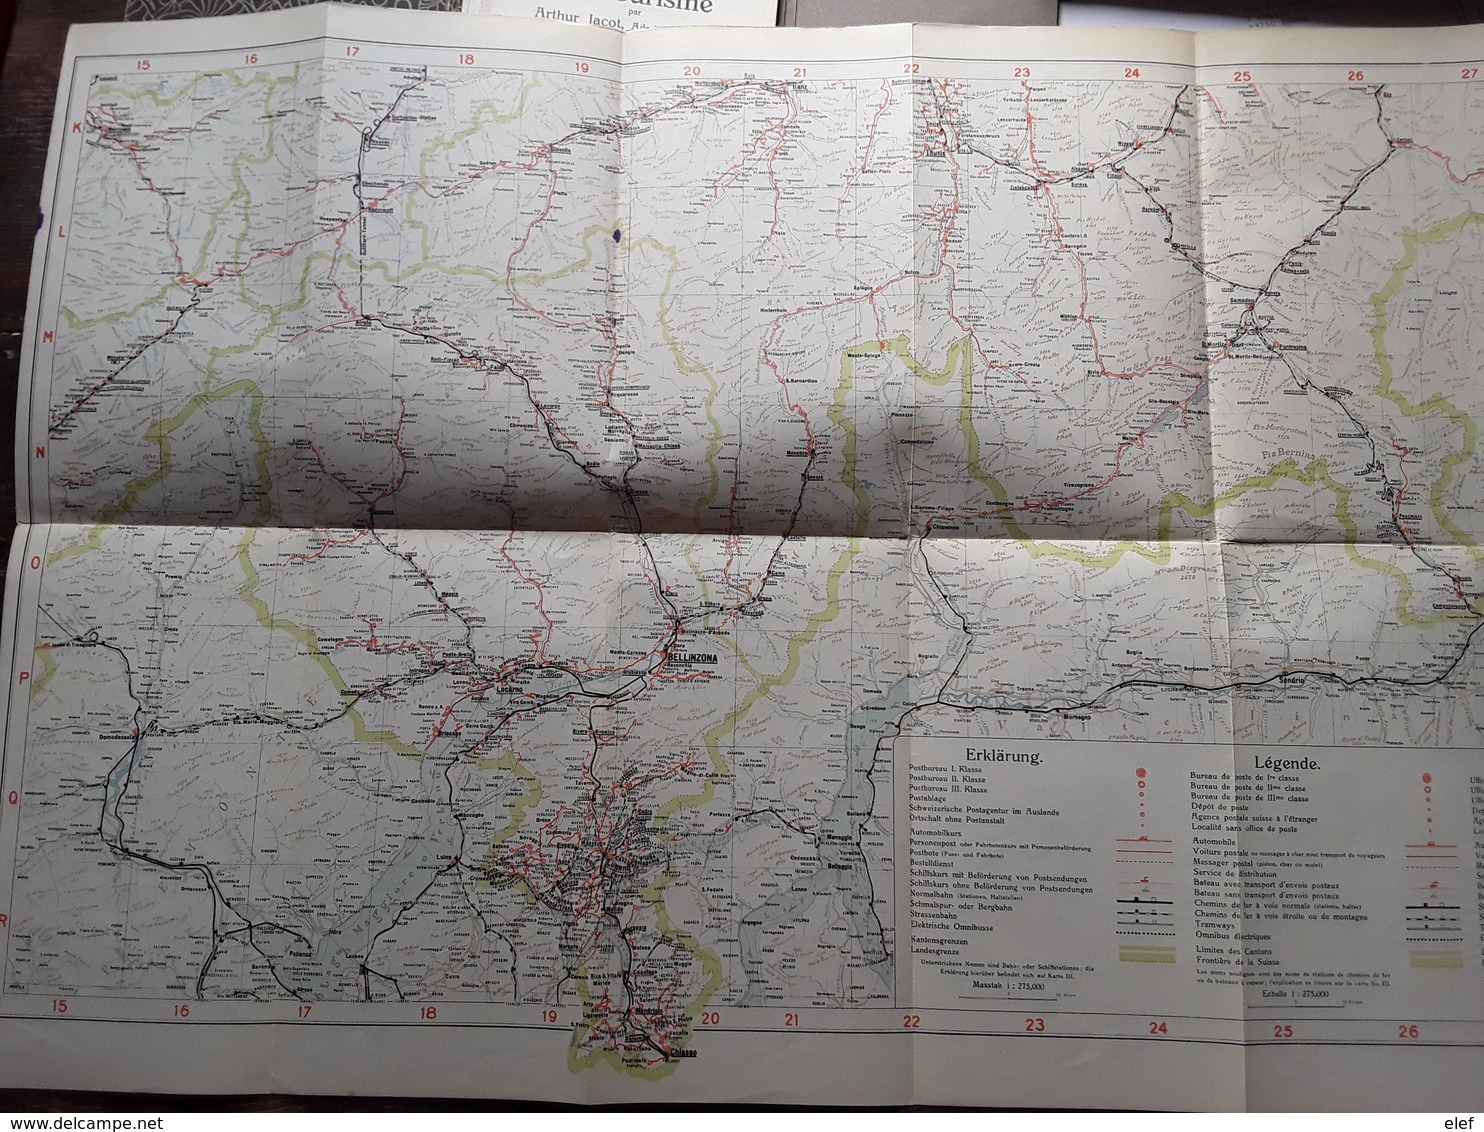 Suisse Guide Cartes Schweizerische Verkehrs Karte ( 4),mit Orts Lexicon Arthur Jacot 1926 Verlag Frey Kratz Zurich, Tb R - Suisse